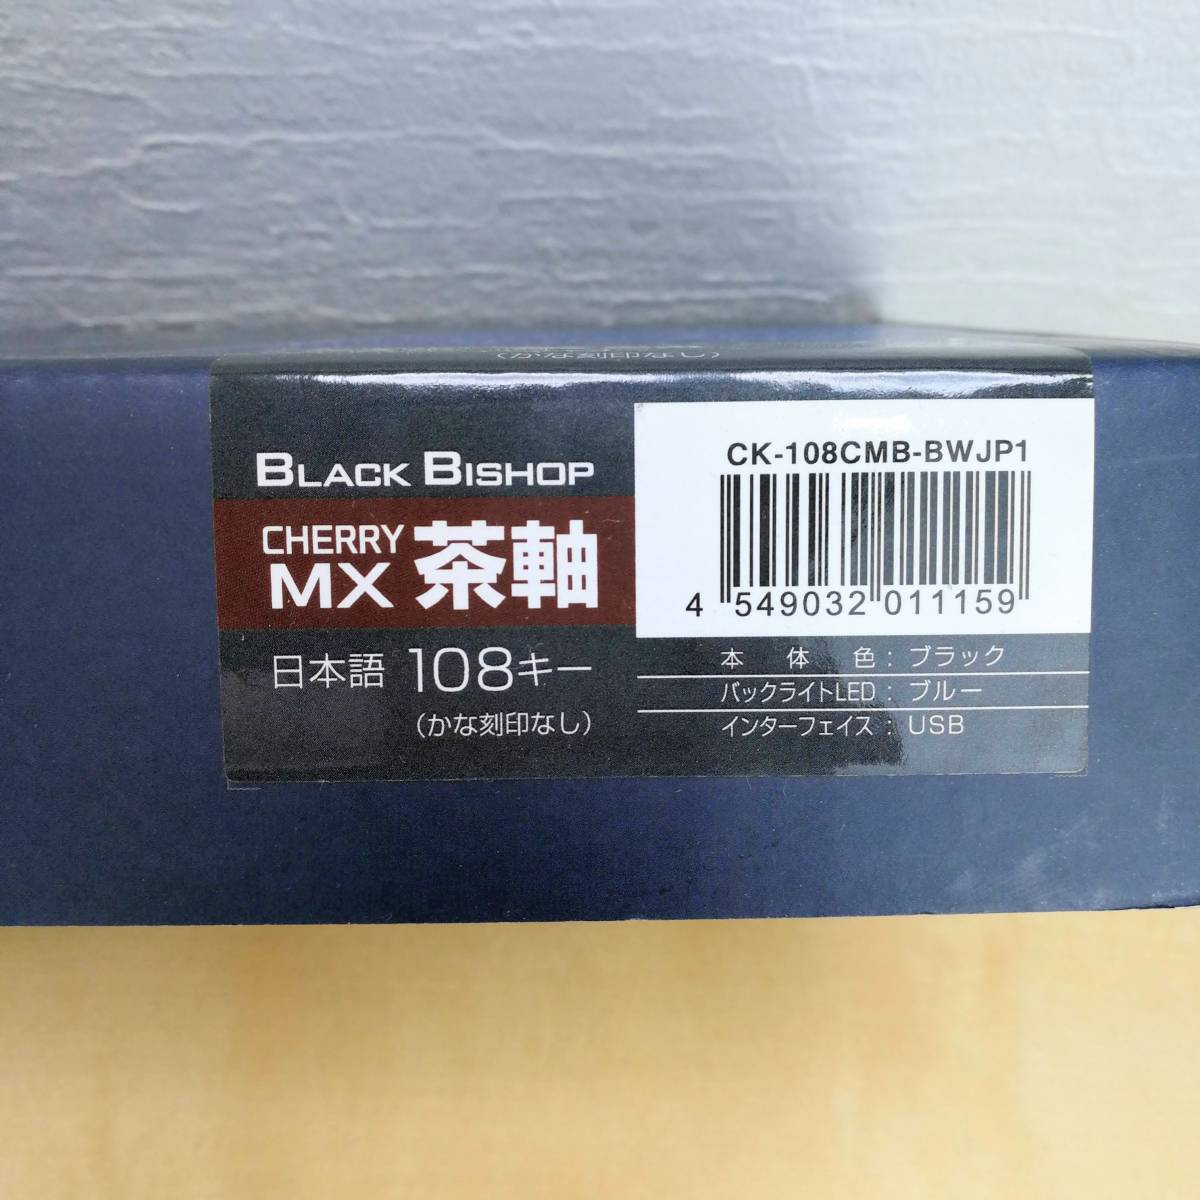 ゴッホ 星月夜 センチュリー バックライトLED機能搭載 CHERRYメカニカルキーボード 108キー/日本語配列 『BLACK BISHOP 青軸』  CK